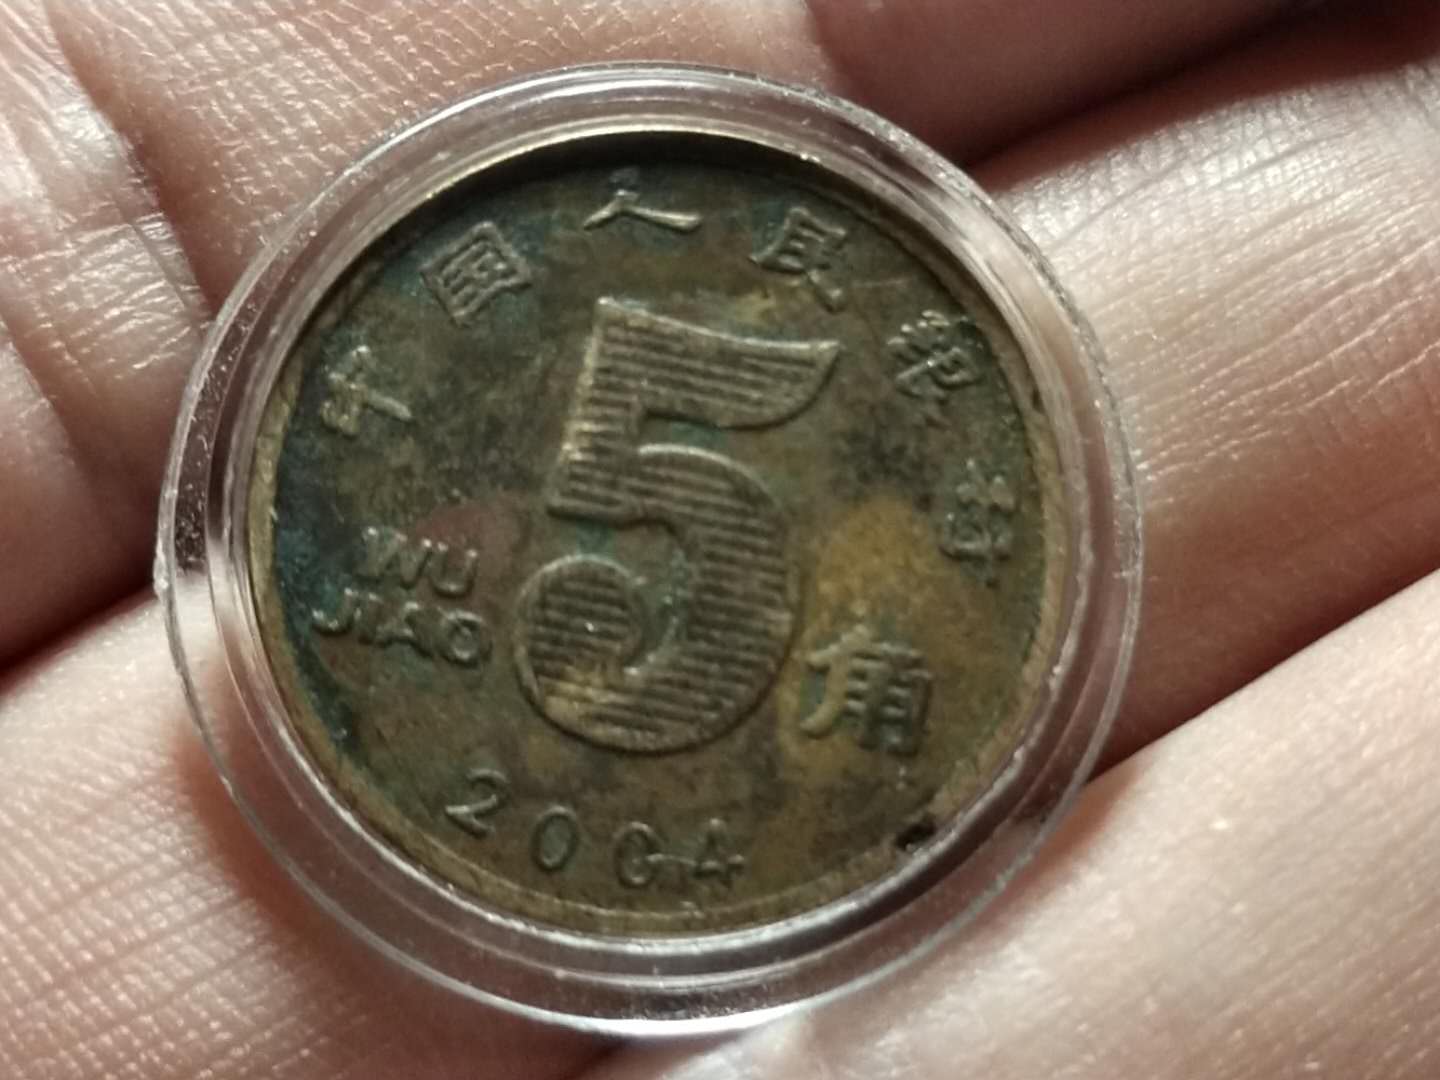 2004年20元硬币图片